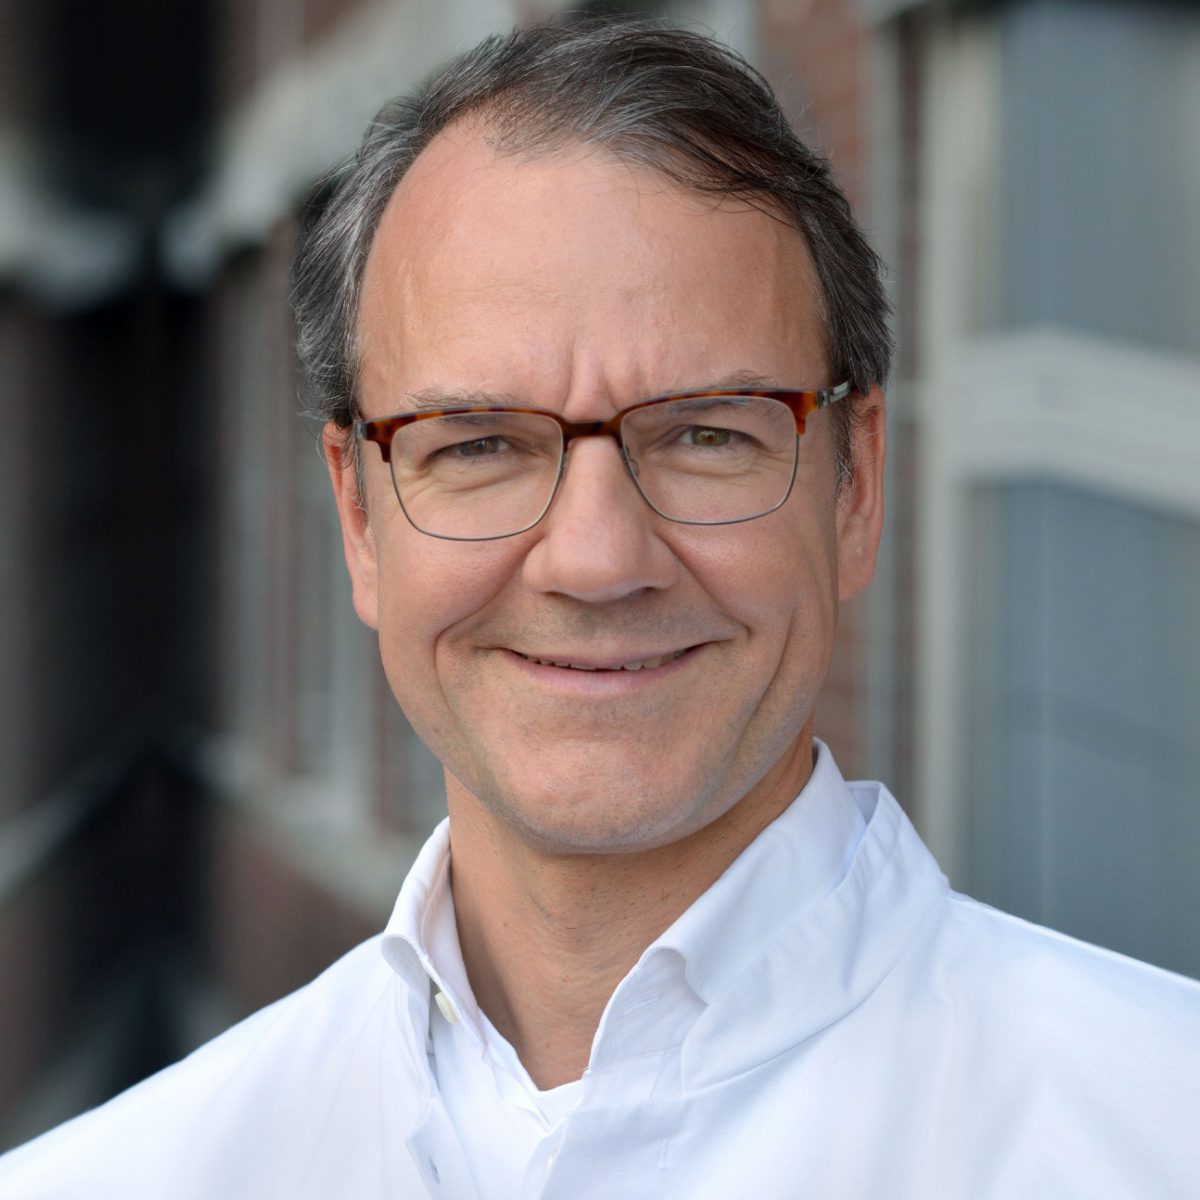 Prof. Dr. med. Johannes Stöve